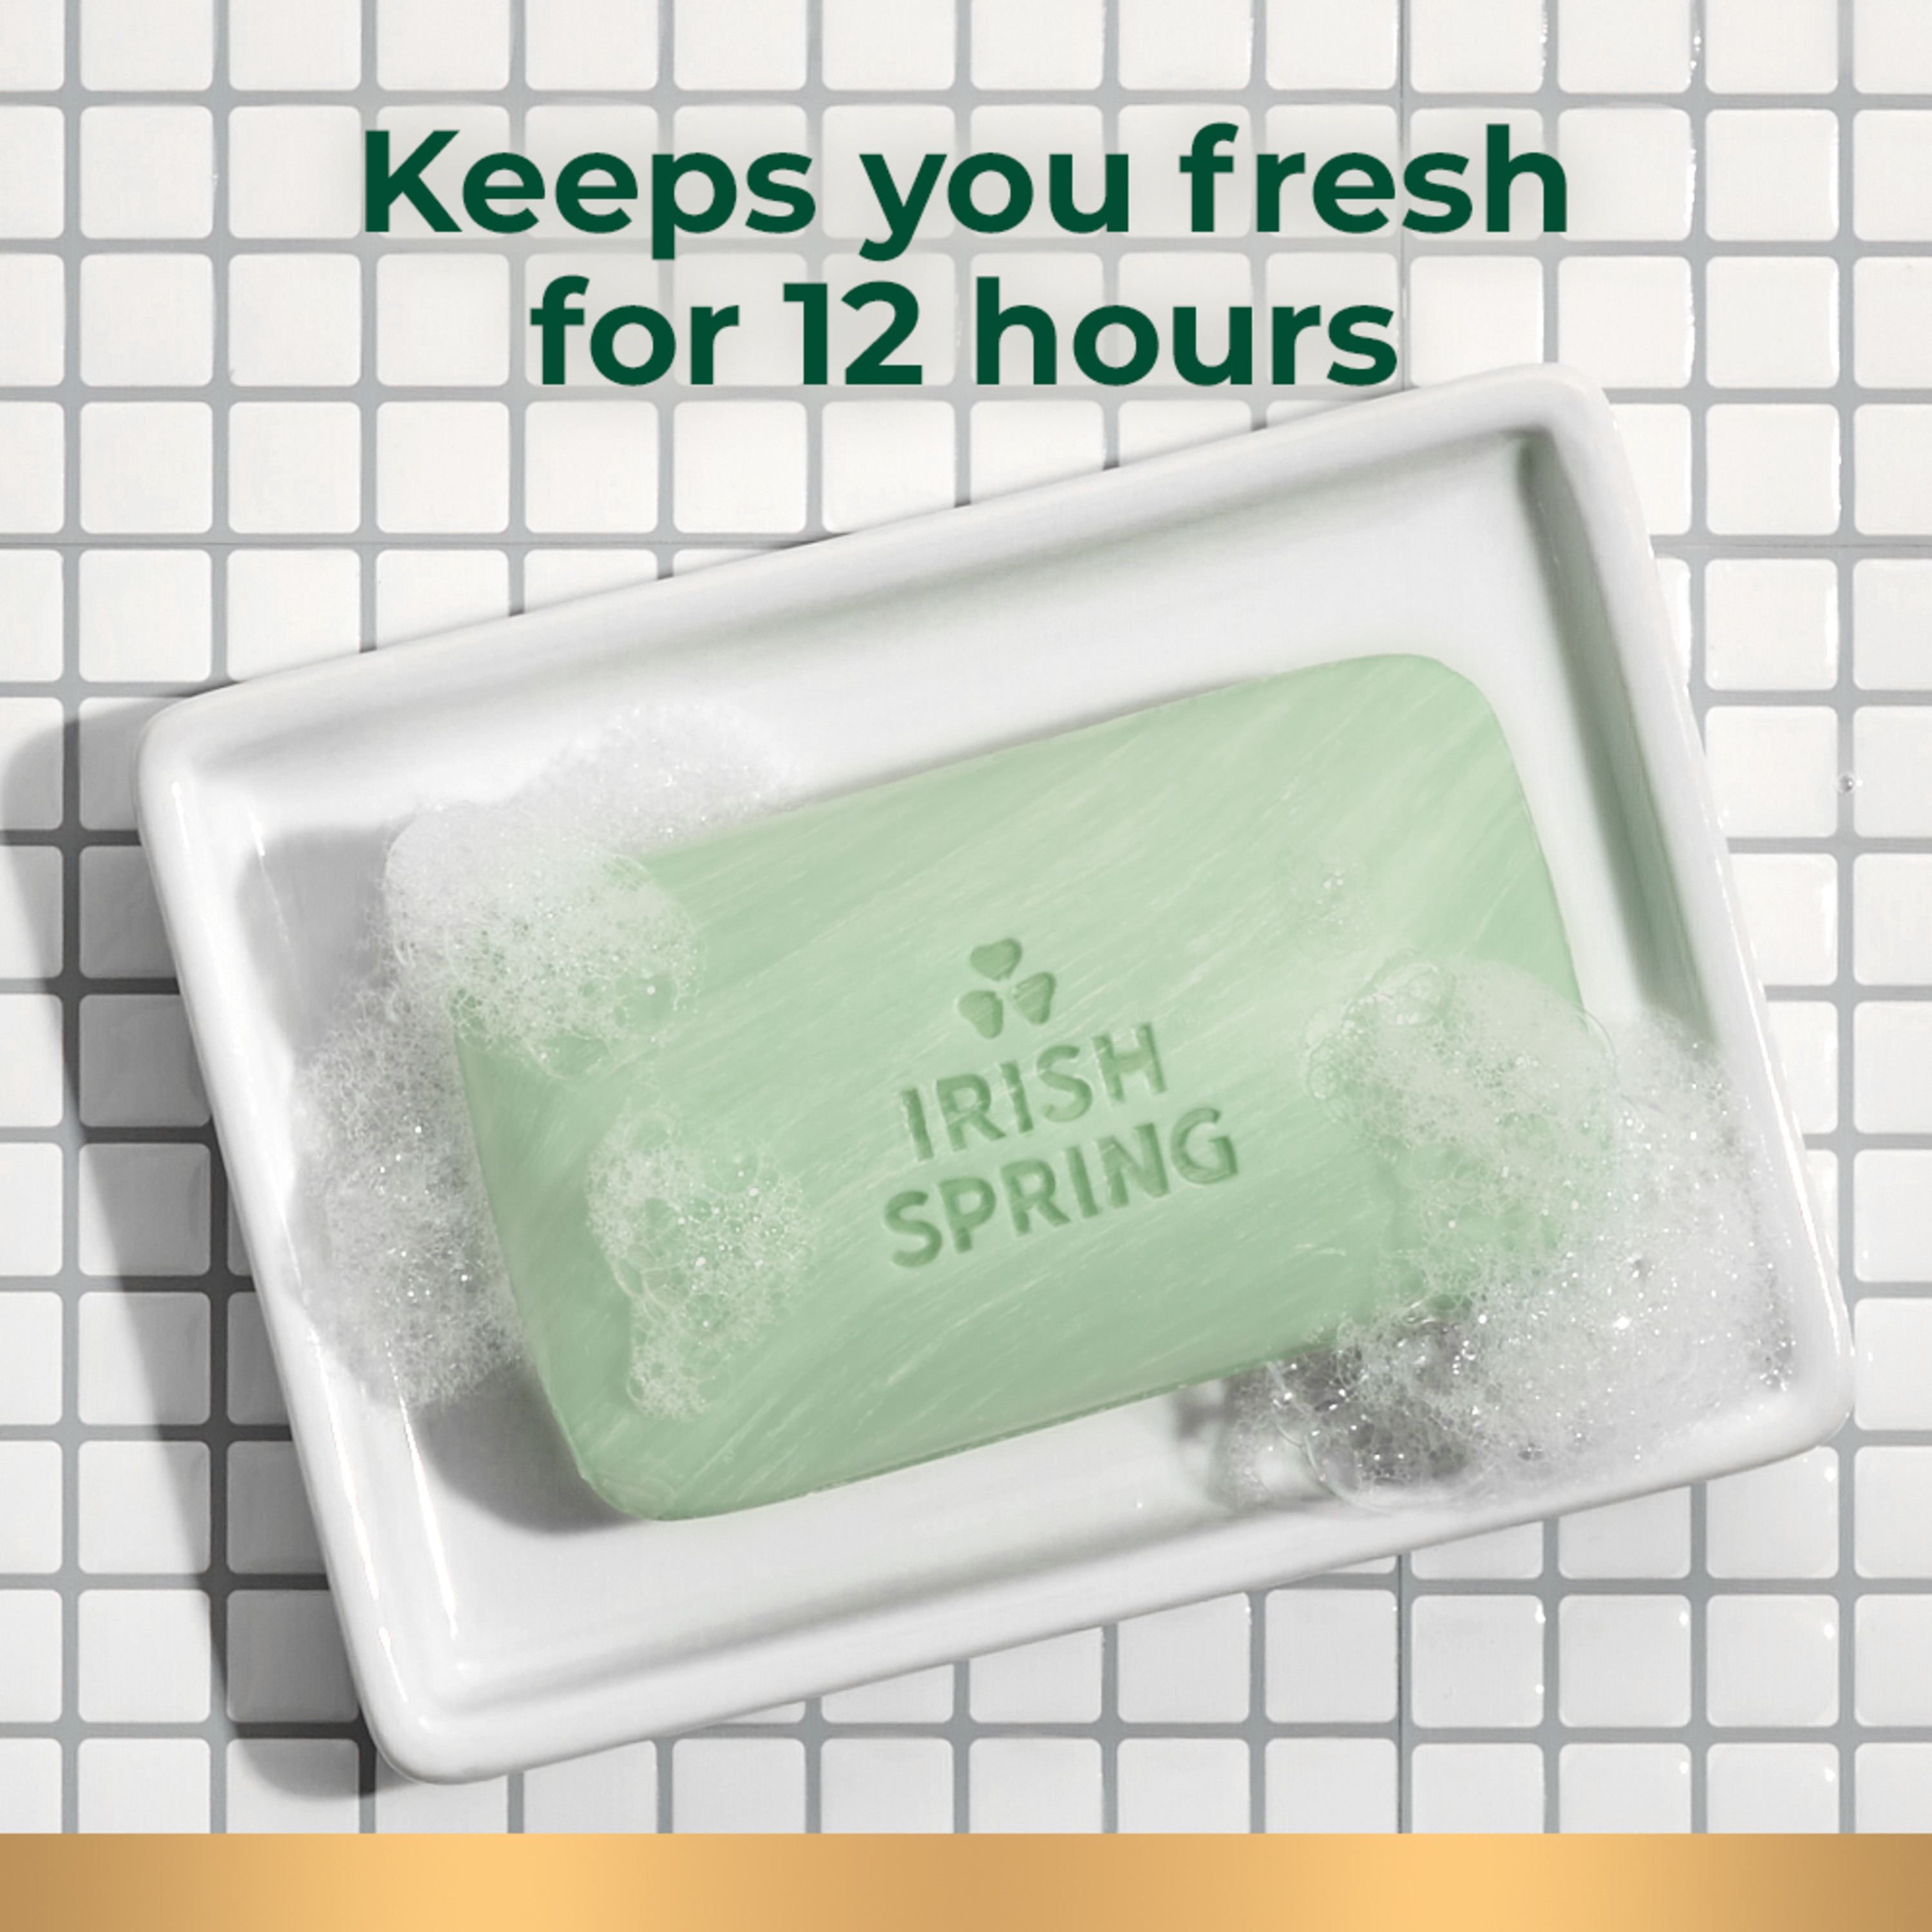 Irish Spring Aloe Mist Deodorant Bar Soap for Men, Feel Fresh All Day, 3.7 oz, 12 Pack - image 2 of 23